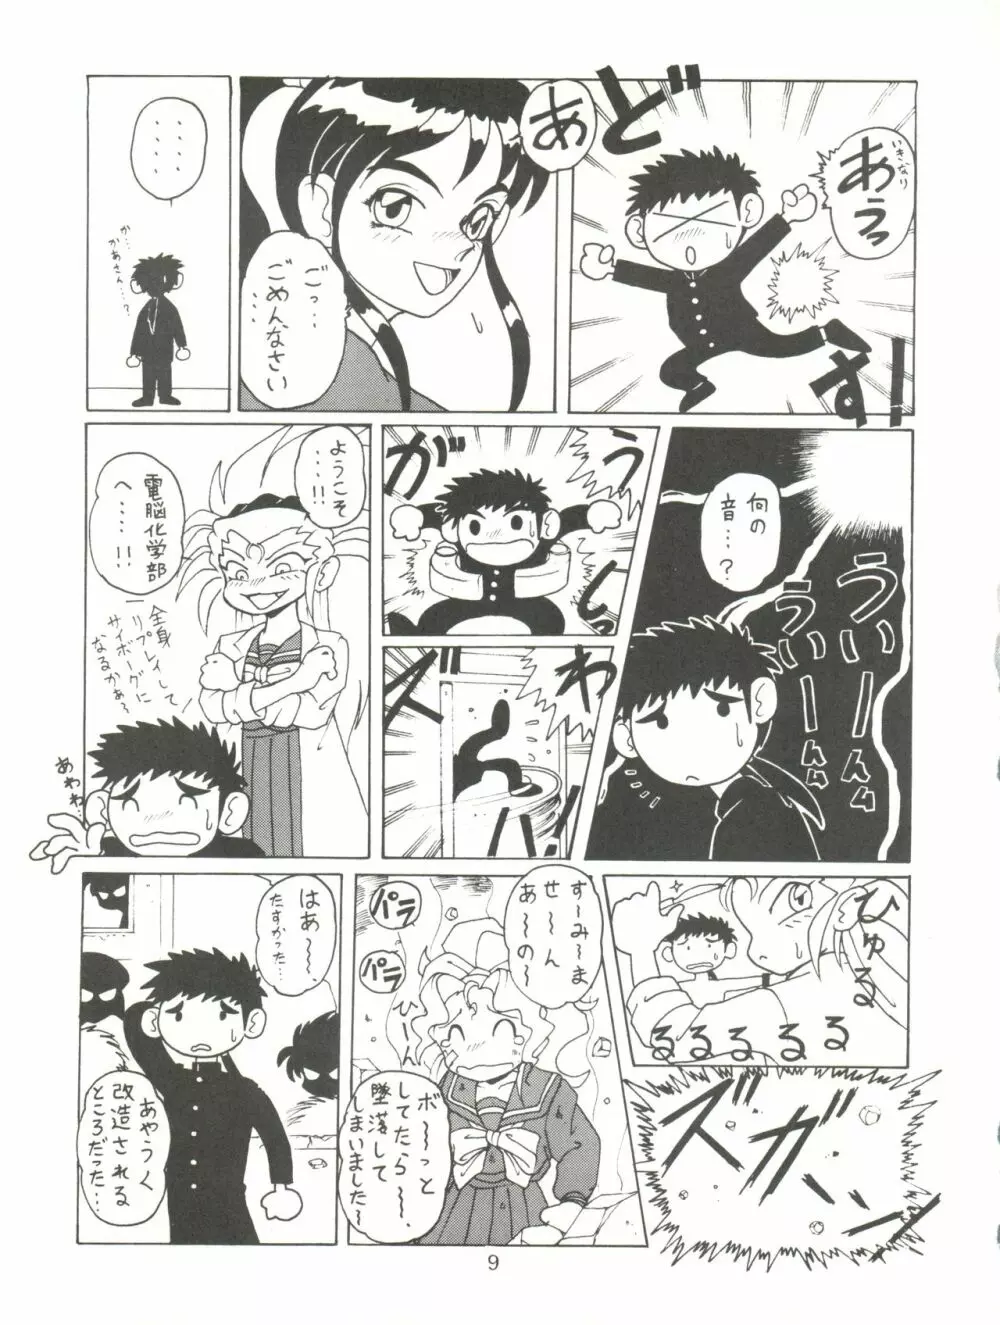 天地無用! みゃーん 3 Final Page.9